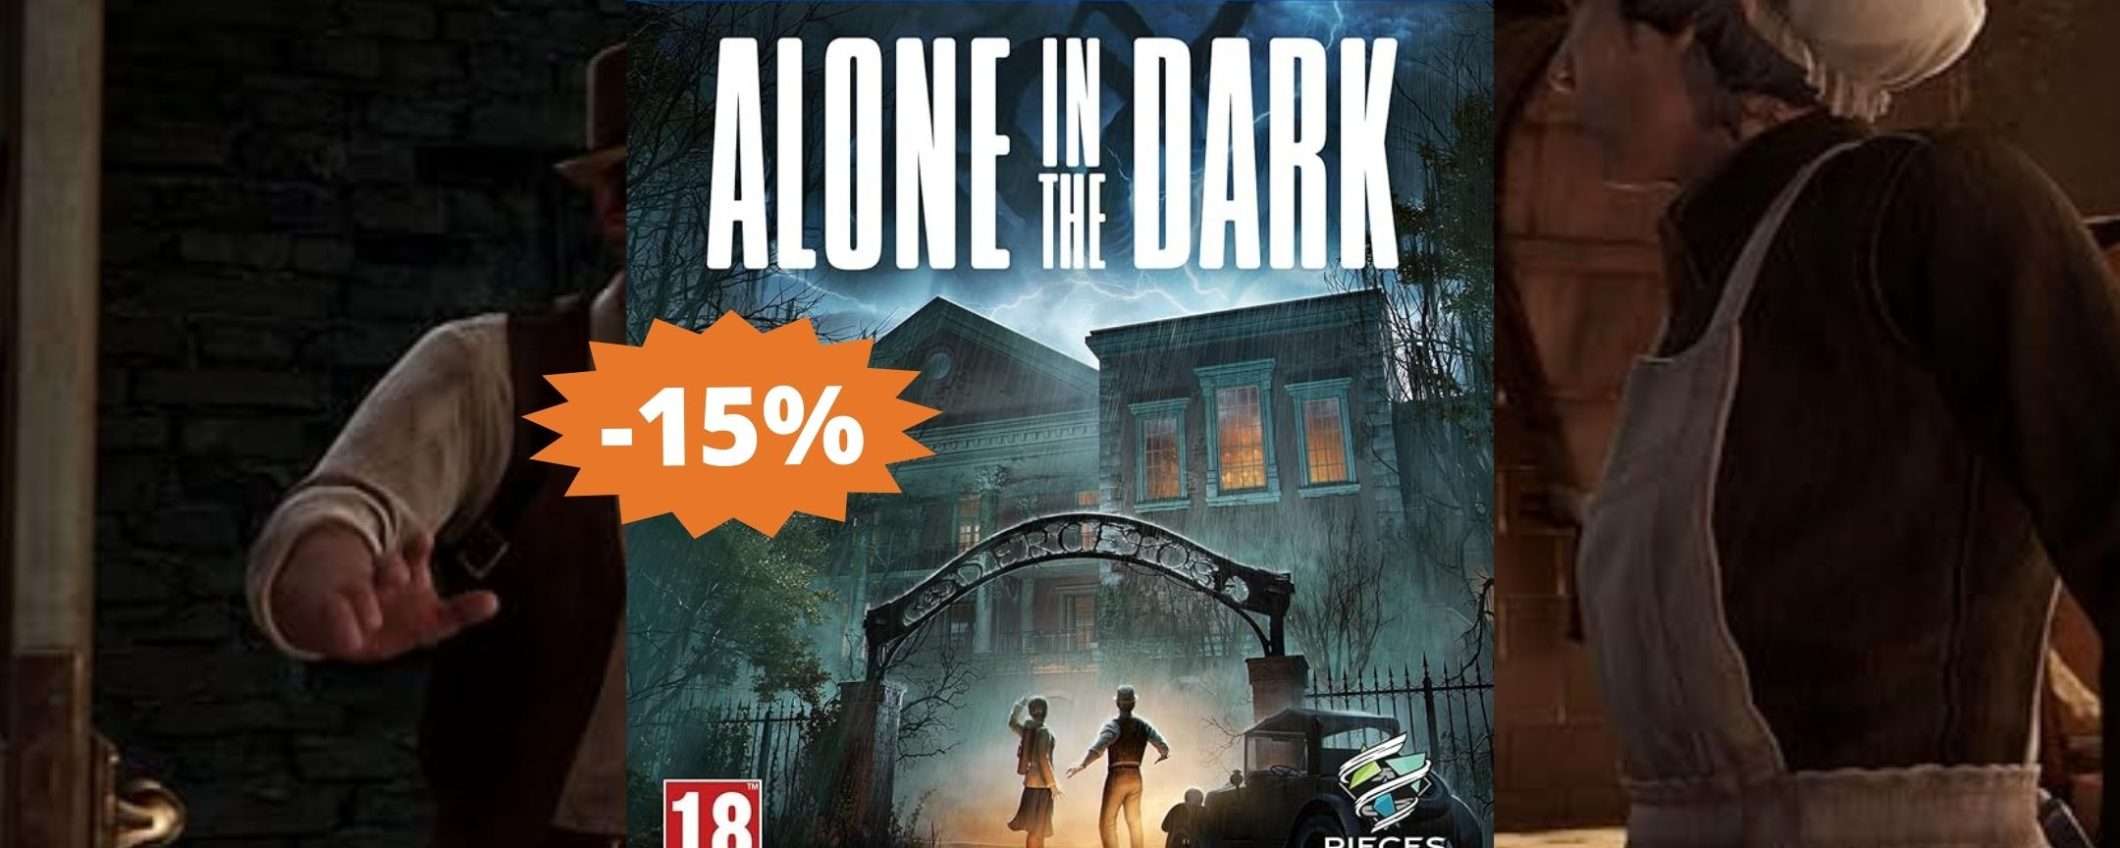 Alone in the Dark per PS5: una storia INQUIETANTE (-15%)